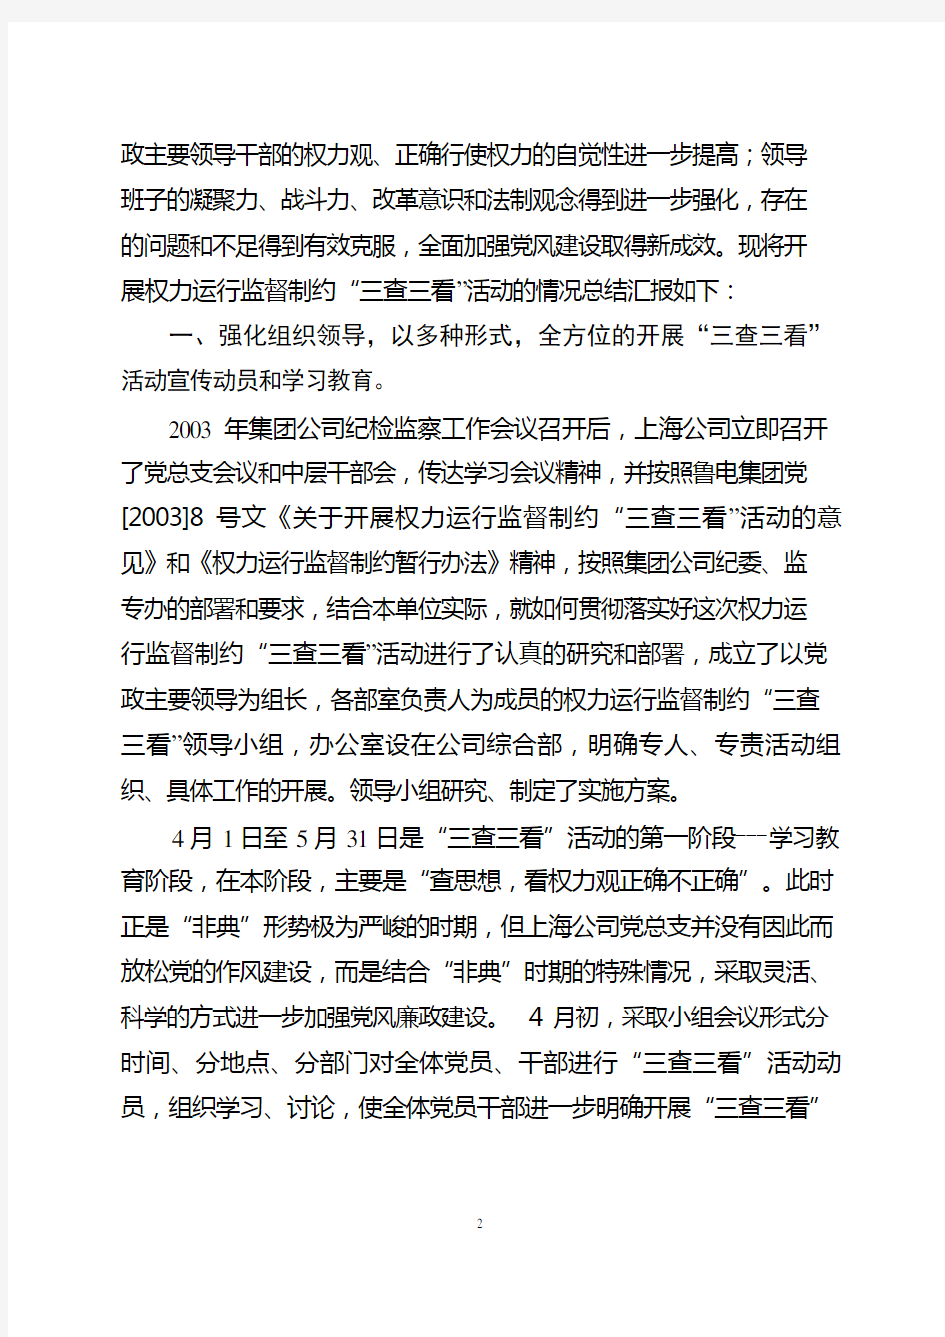 2003上海鲁能科技发展有限公司关于三查三看活动总结汇报